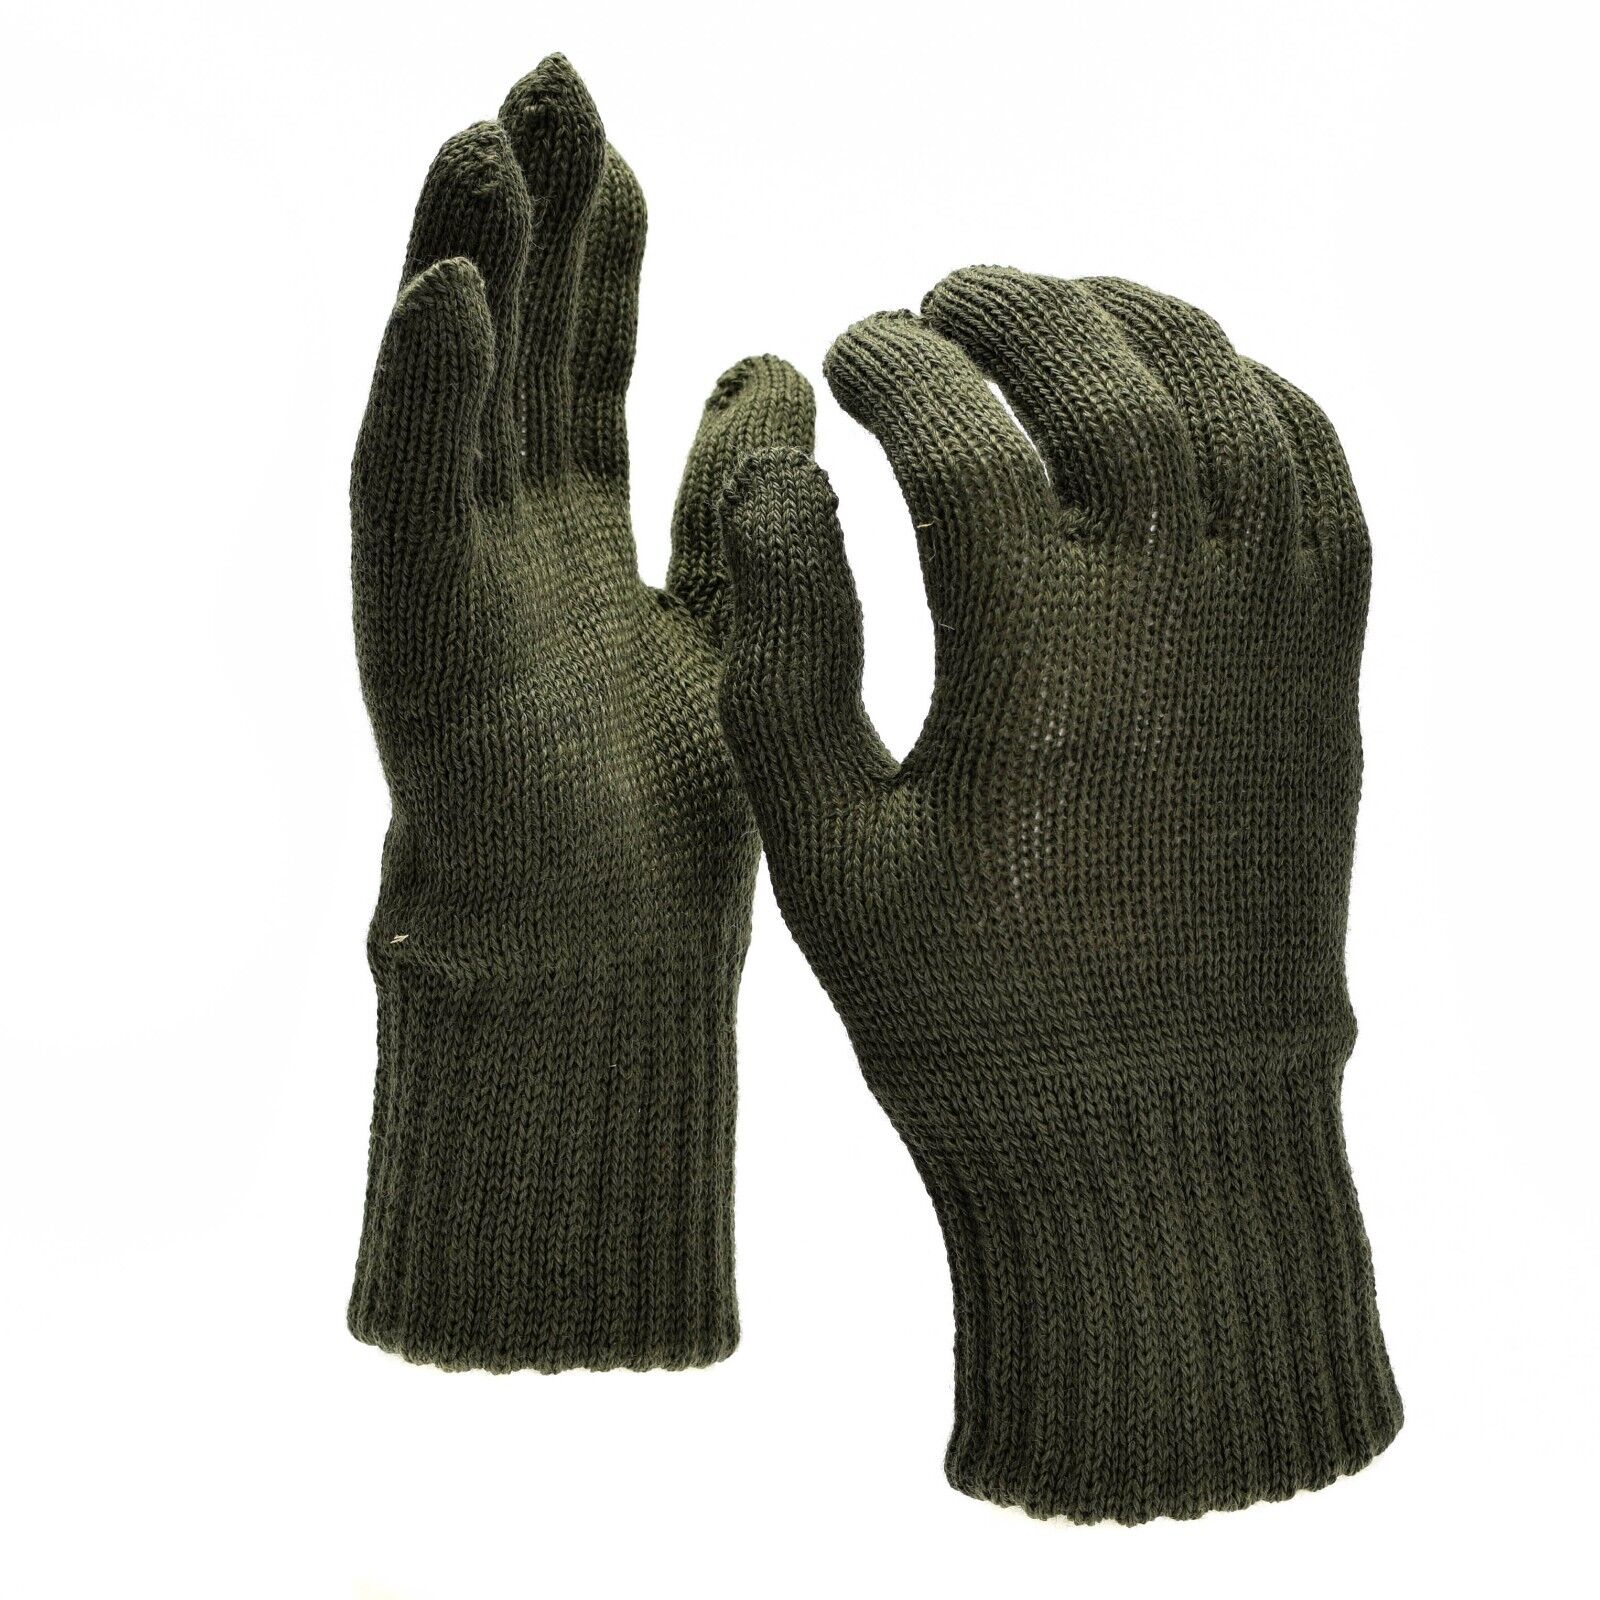 Genuine Belgian army military gloves Liners wool warmers Military Surplus